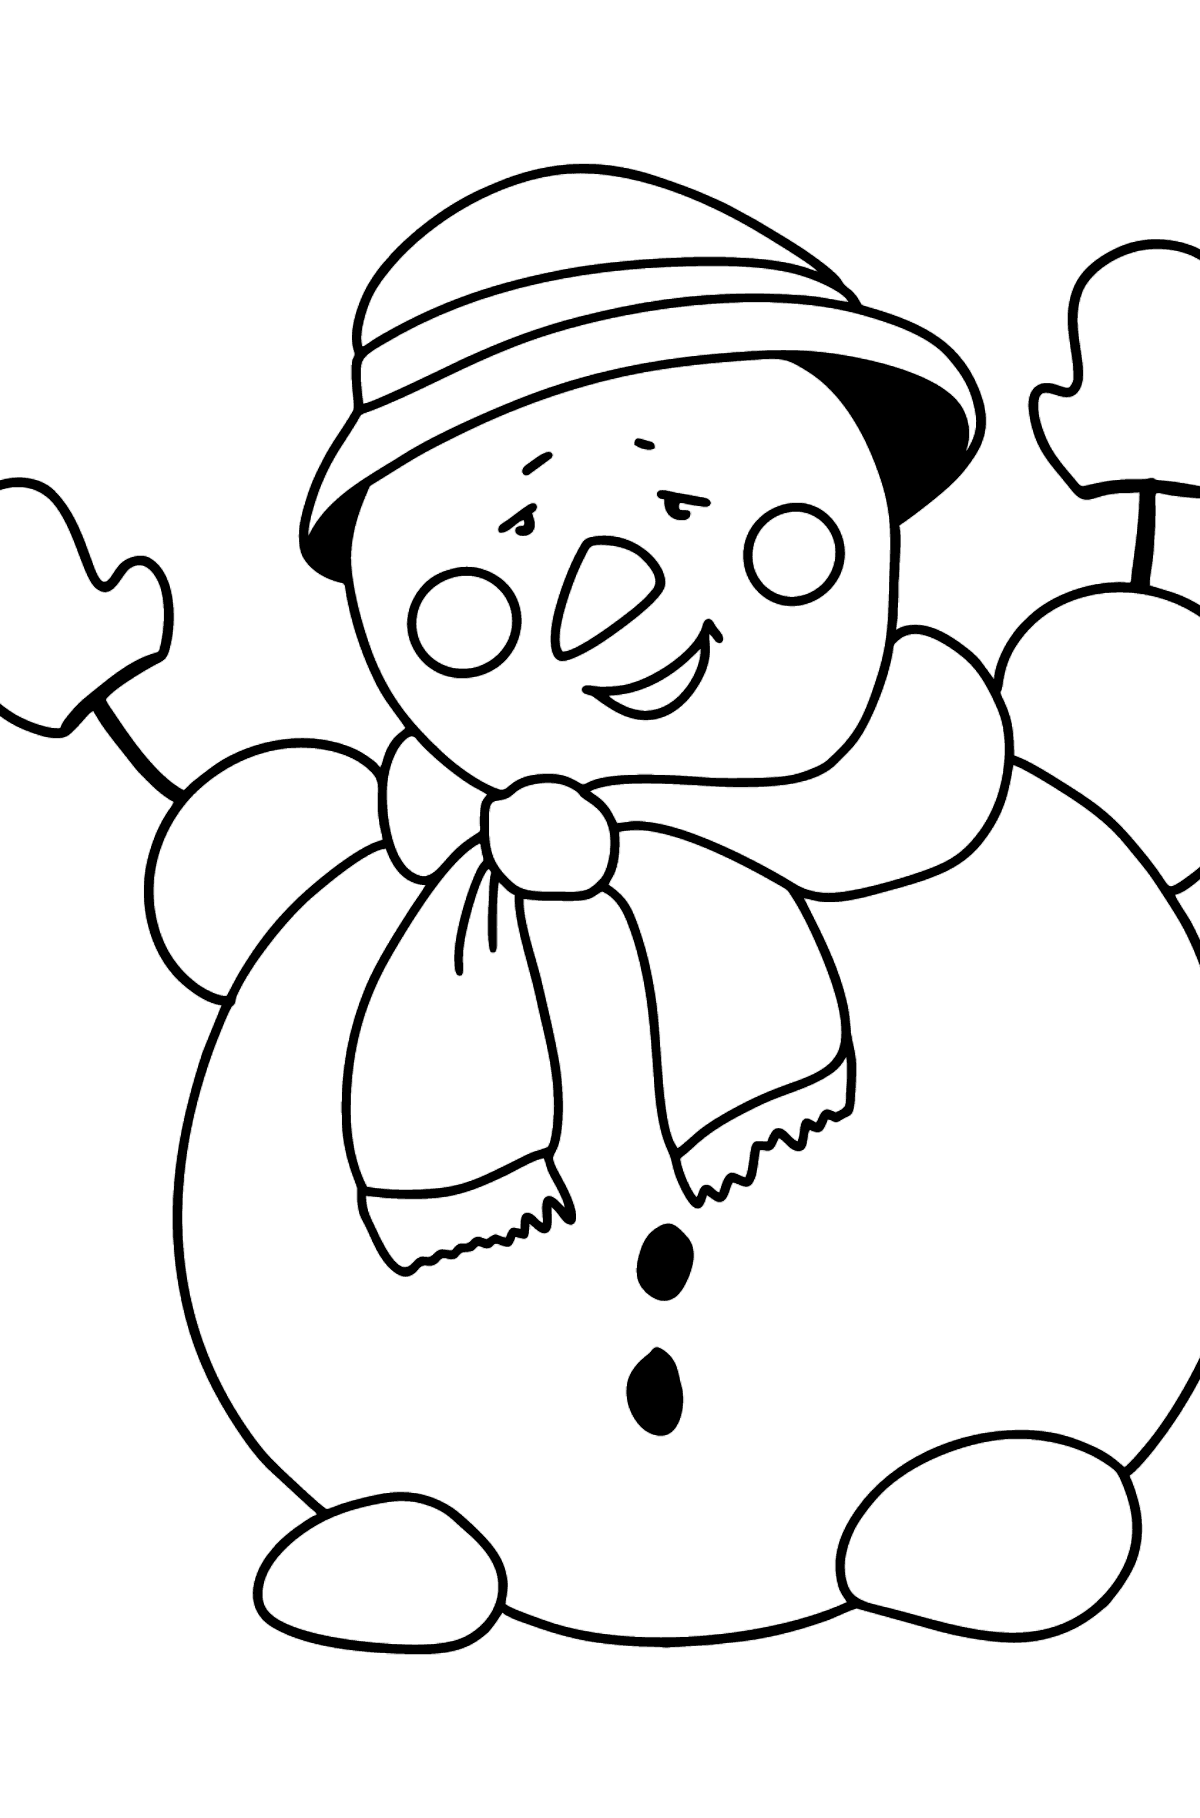 Disegno di pupazzo di neve felice da colorare - Disegni da colorare per bambini